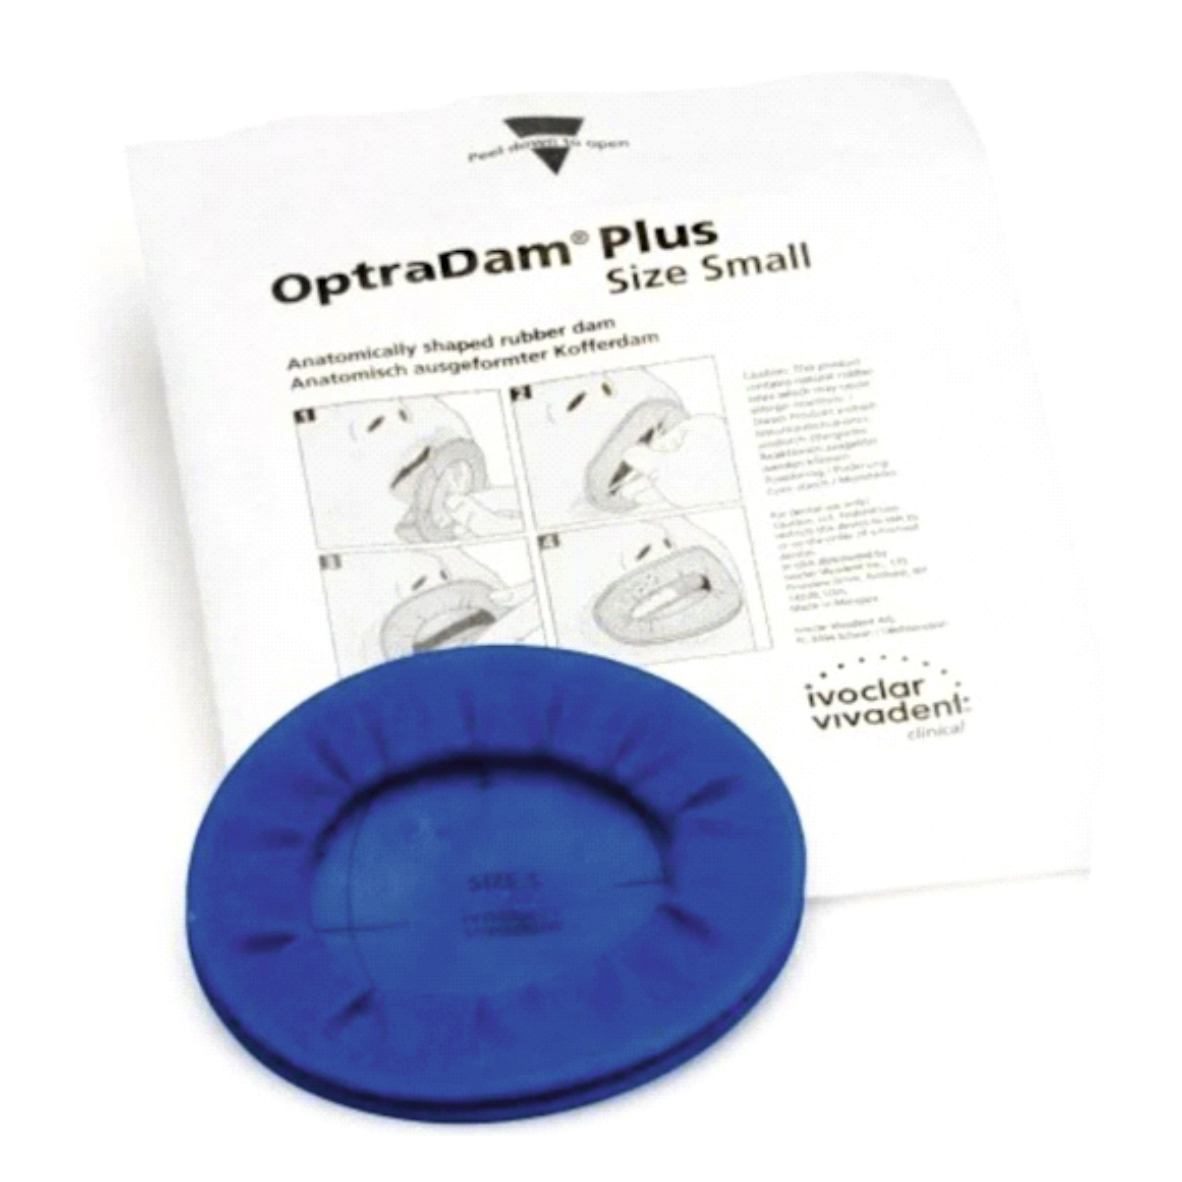 OptraDam Plus Assortment/50 - коффердам анатомической формы